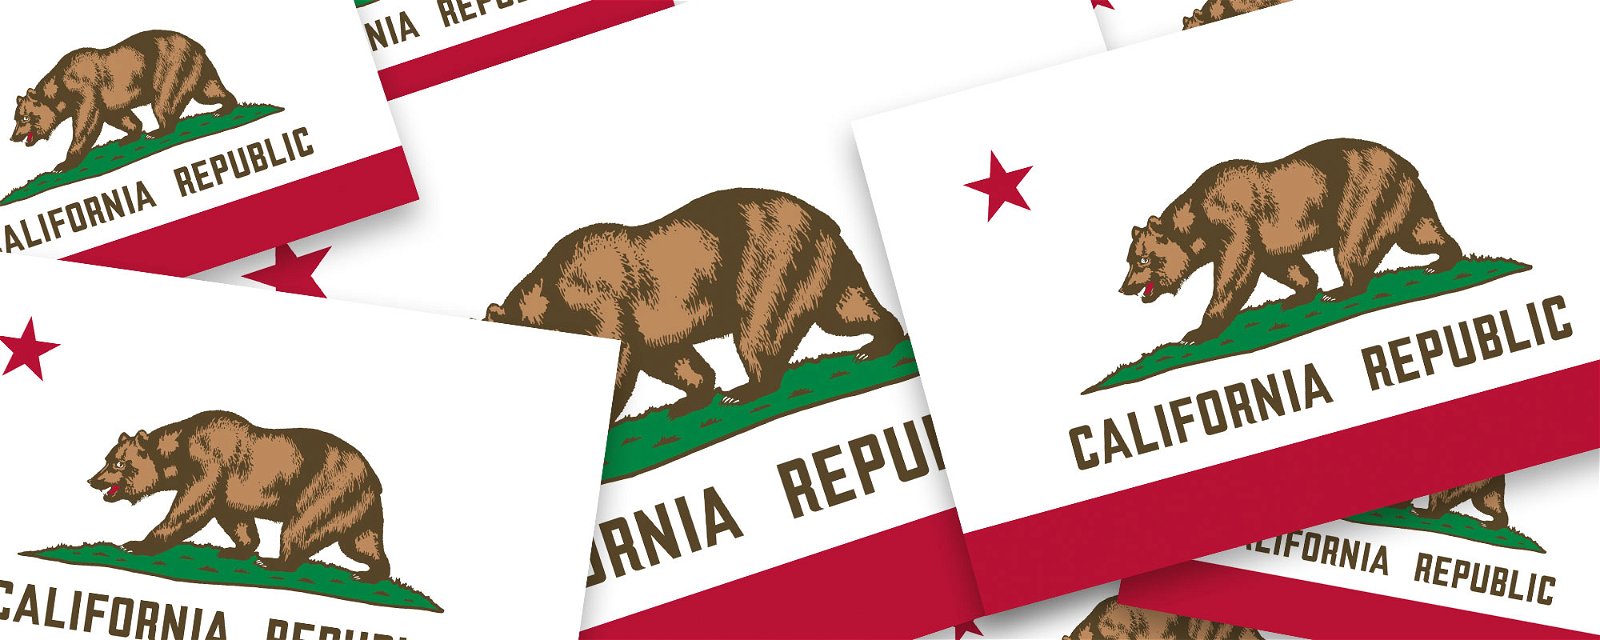 How the California flag 